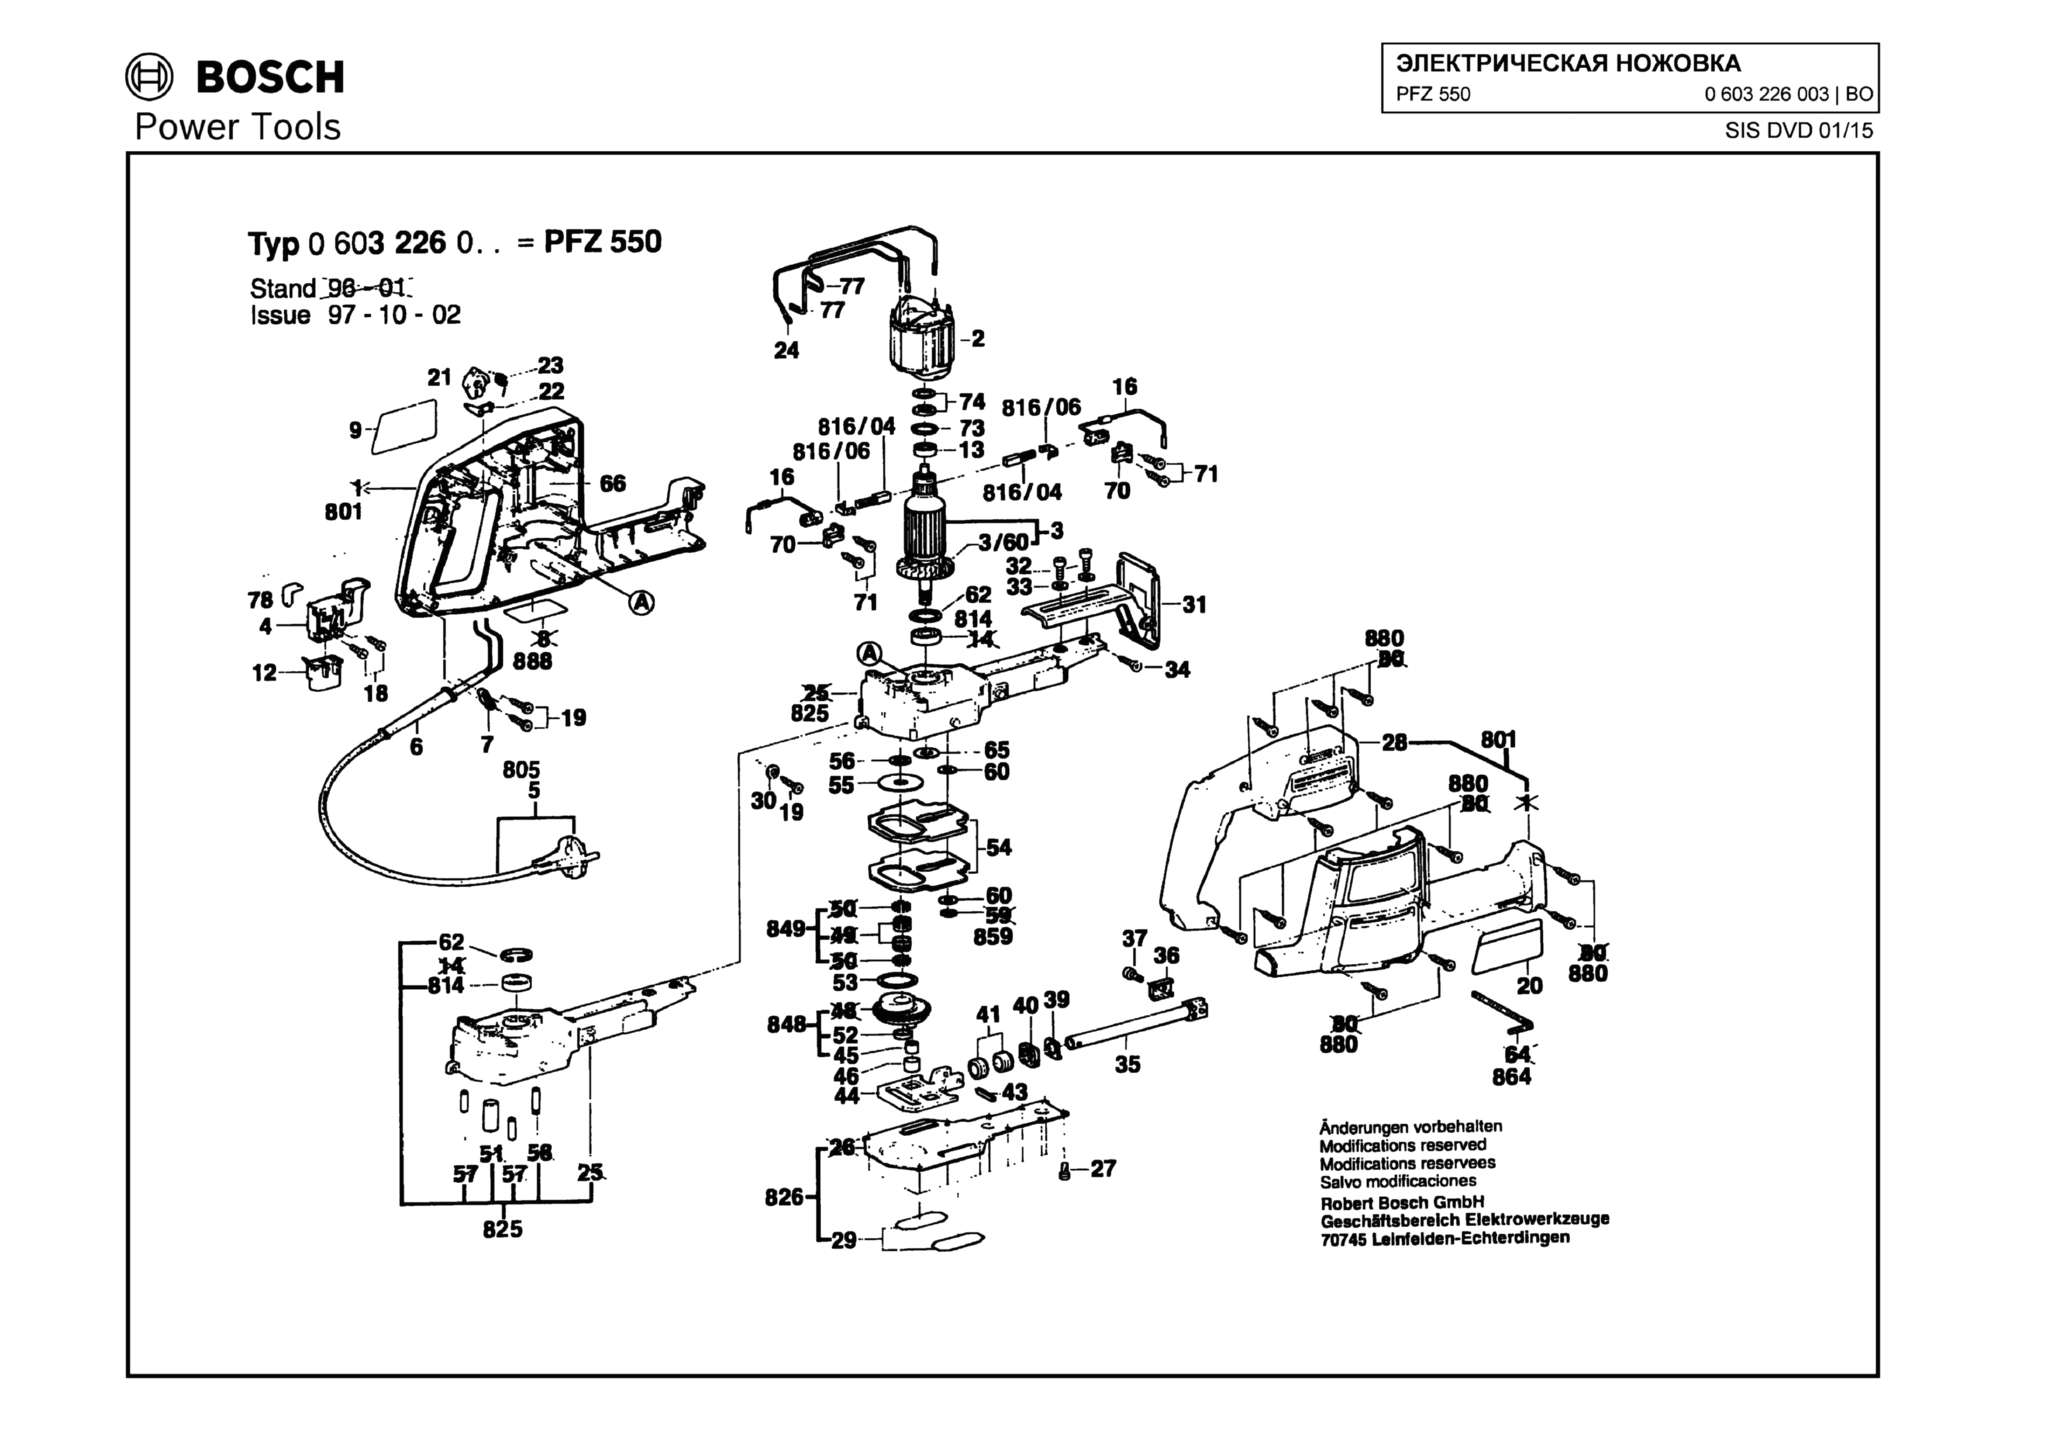 Запчасти, схема и деталировка Bosch PFZ 550 (ТИП 0603226003)